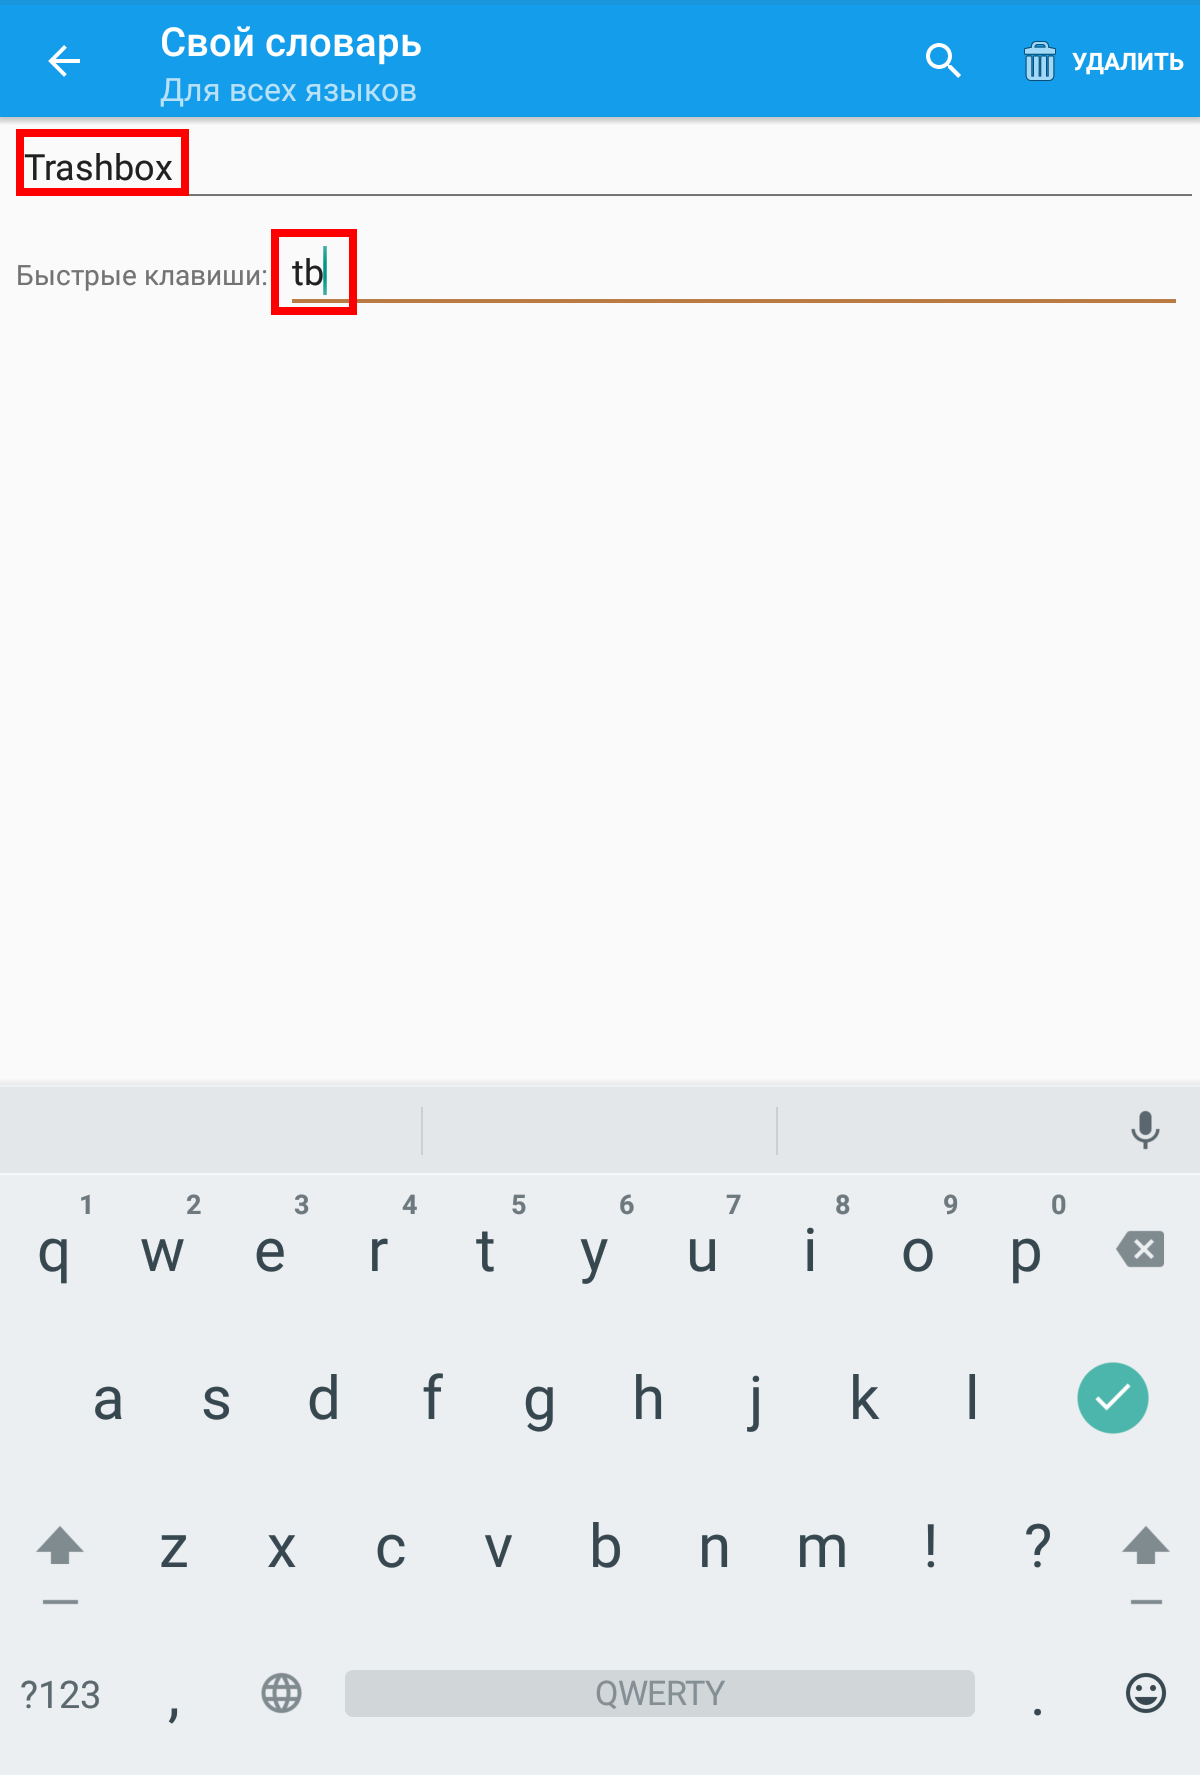 Где номер на клавиатуре телефона андроид. Знак номер на клавиатуре андроид ксиоми. Знак номер на клавиатуре андроид самсунг. Значок номер на андроиде самсунг. Знак номера на клавиатуре Android Xiaomi.